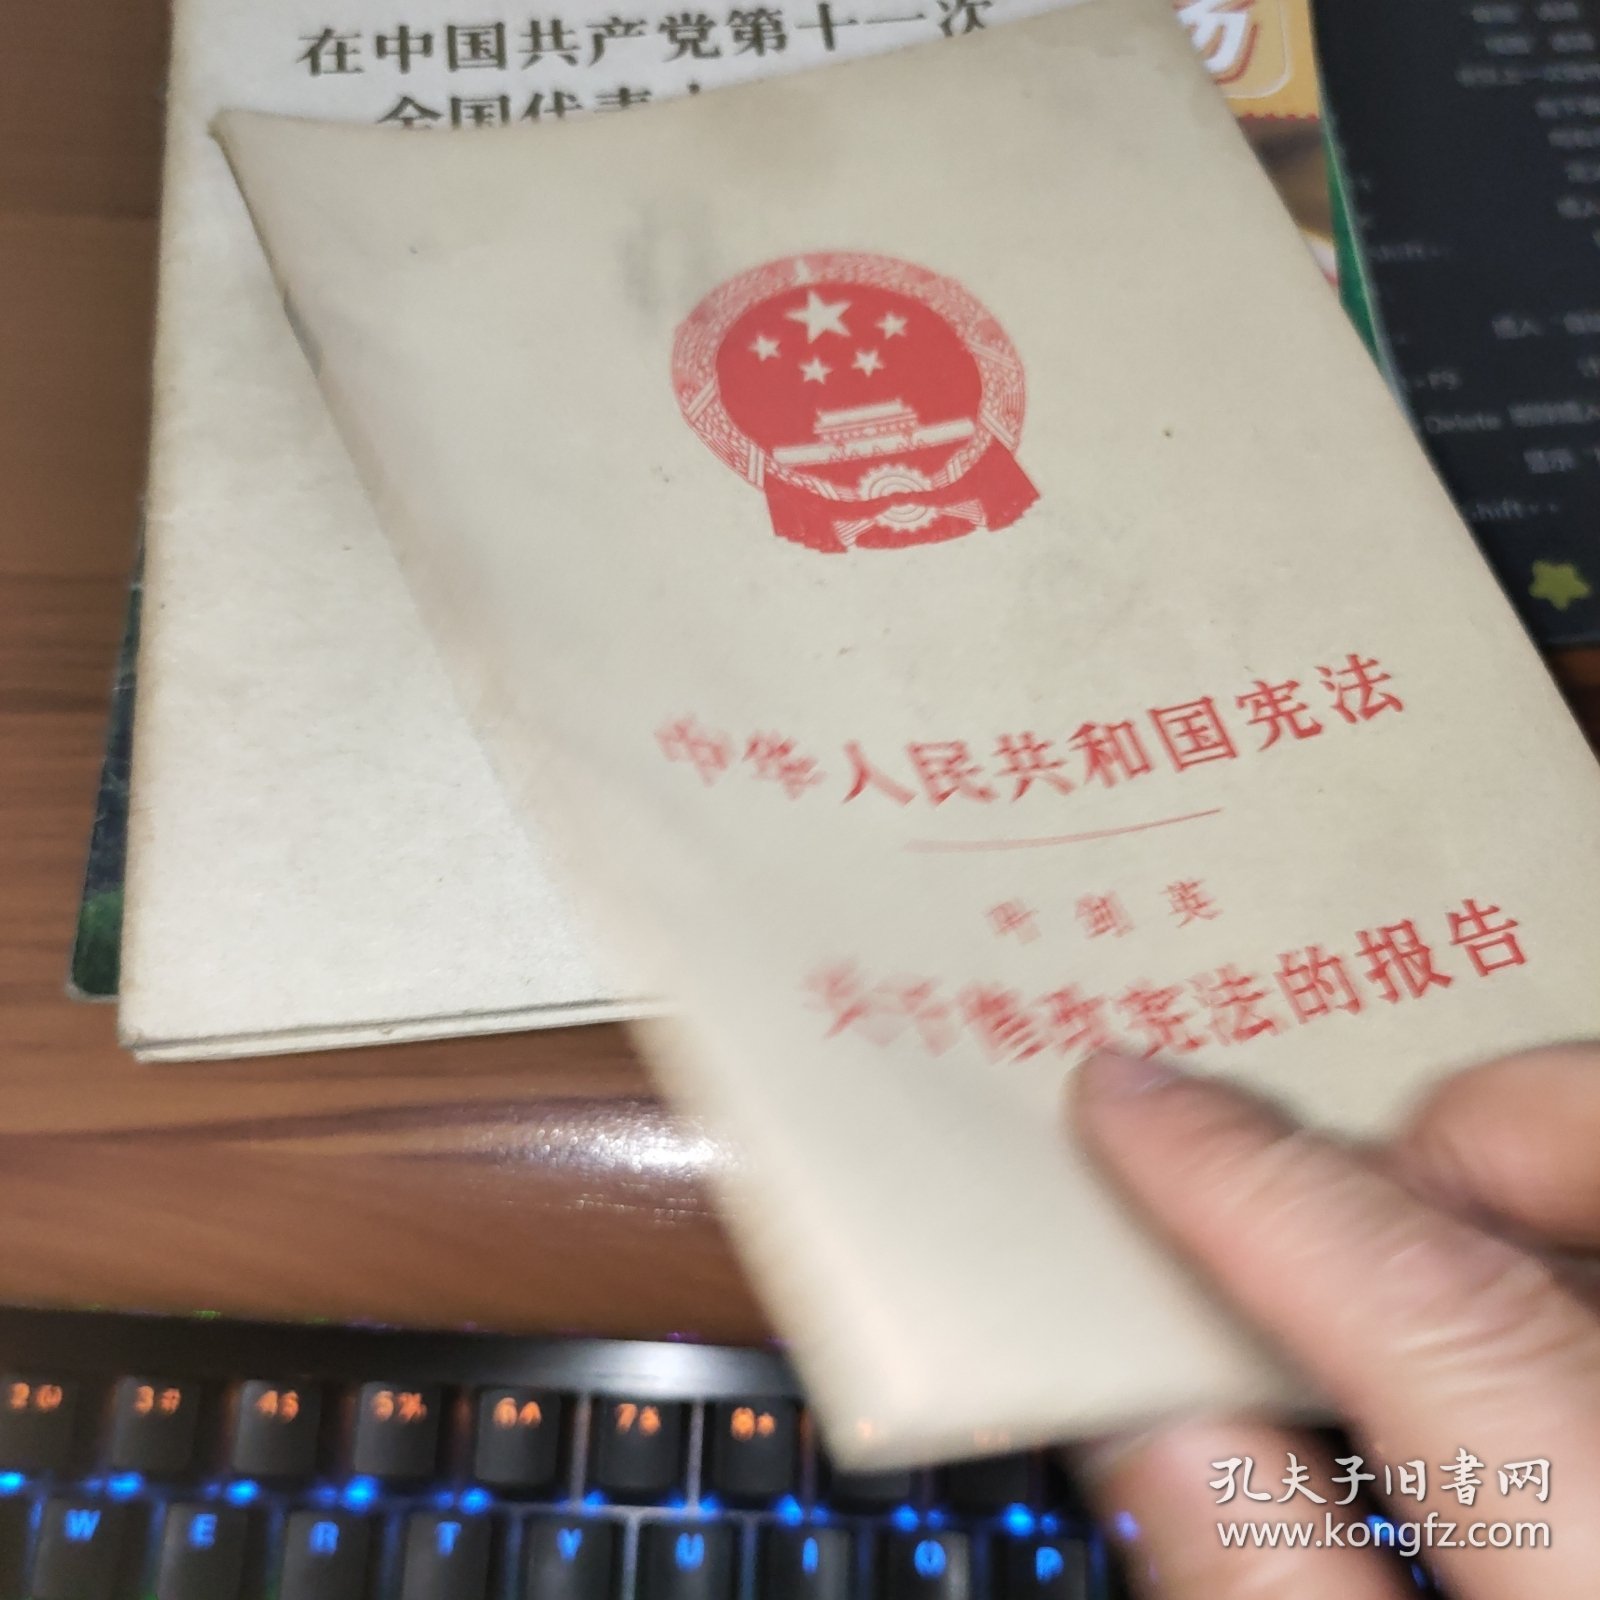 中华人民共和国宪法关于修改宪法的报告